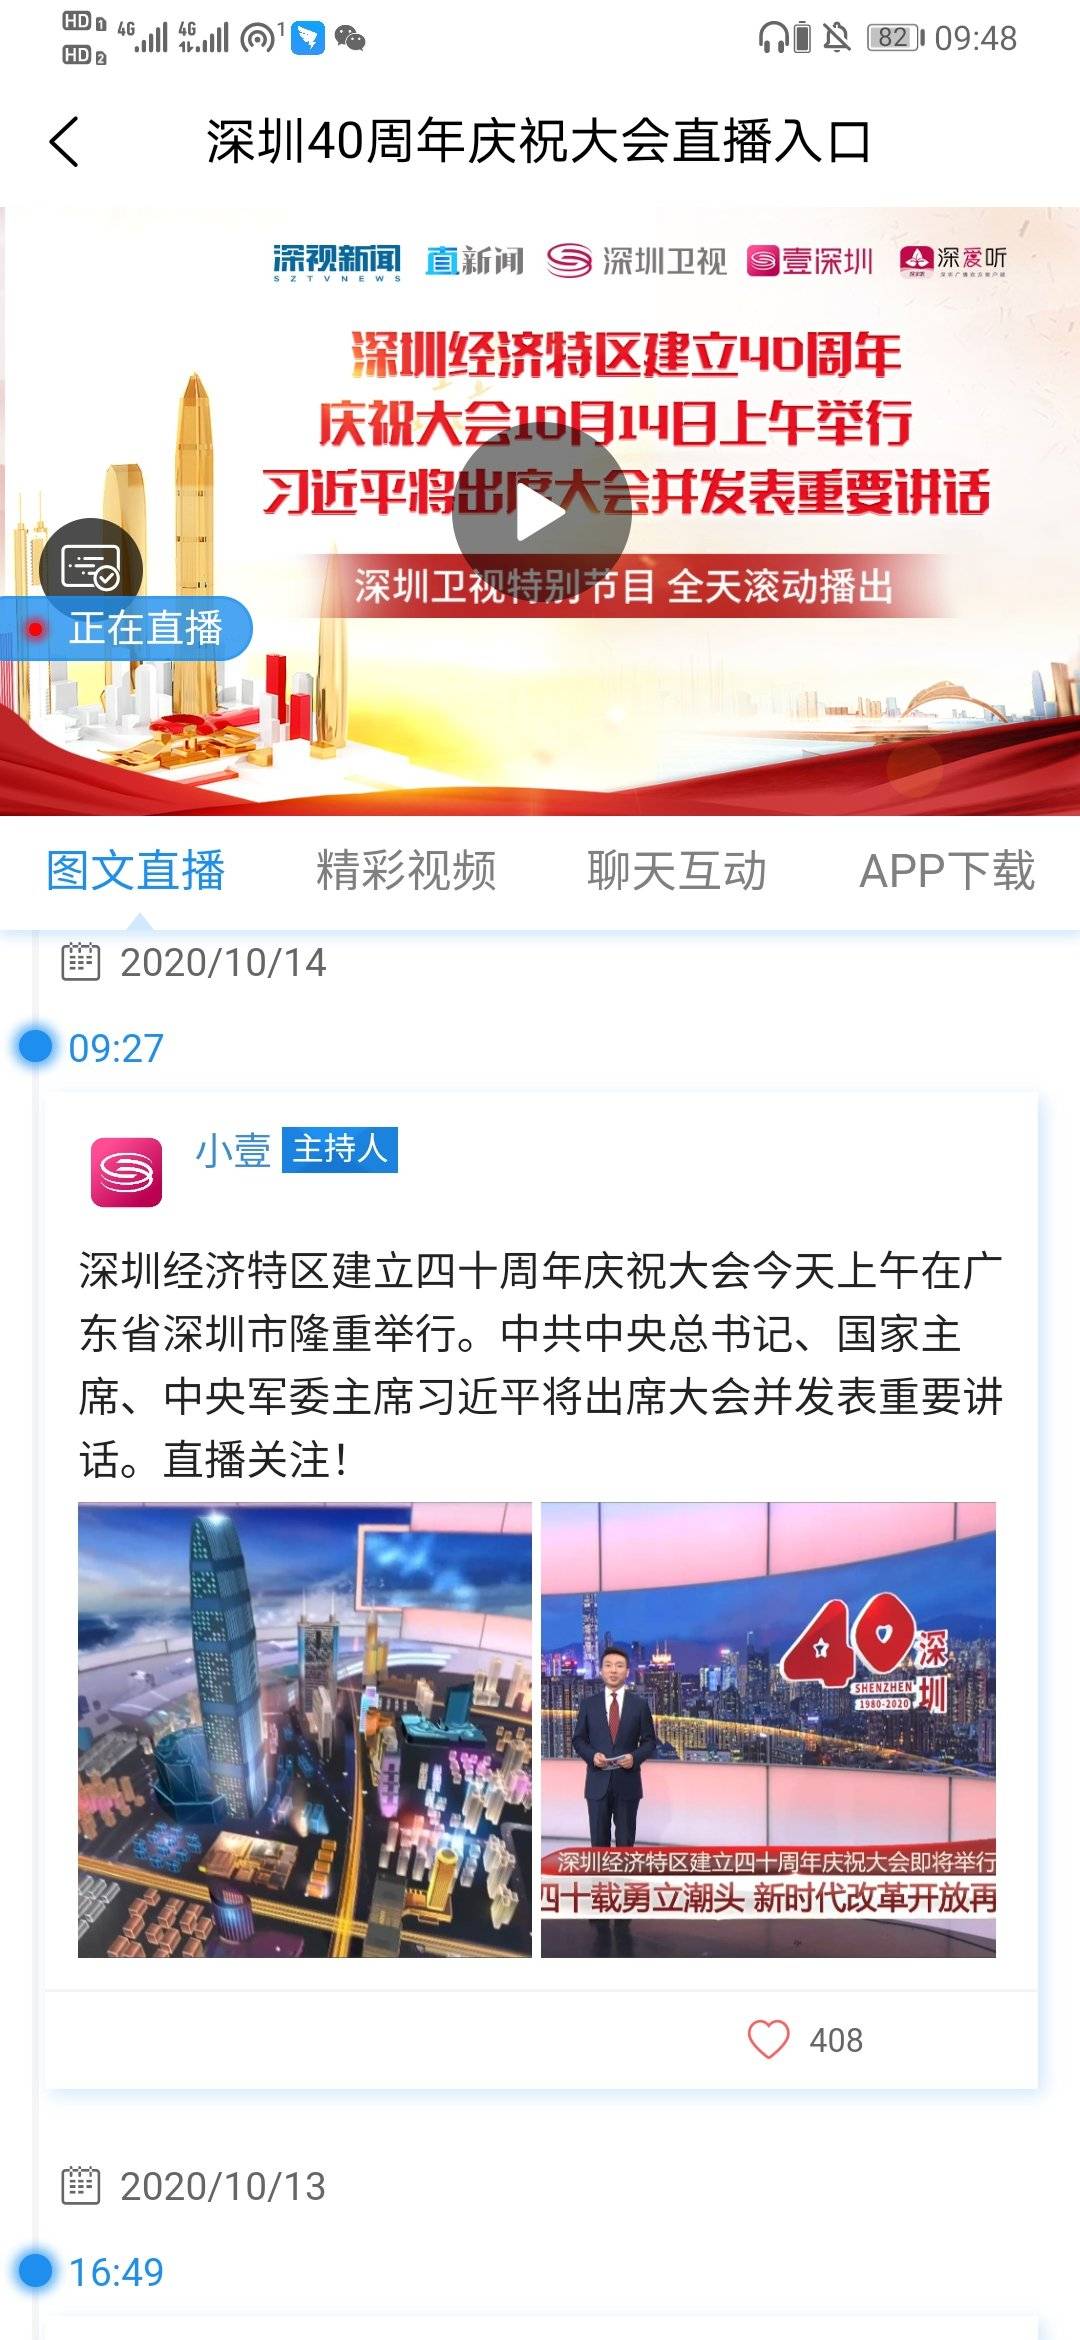 “OD体育官网”
深圳40周年直播视频寓目入口(图1)